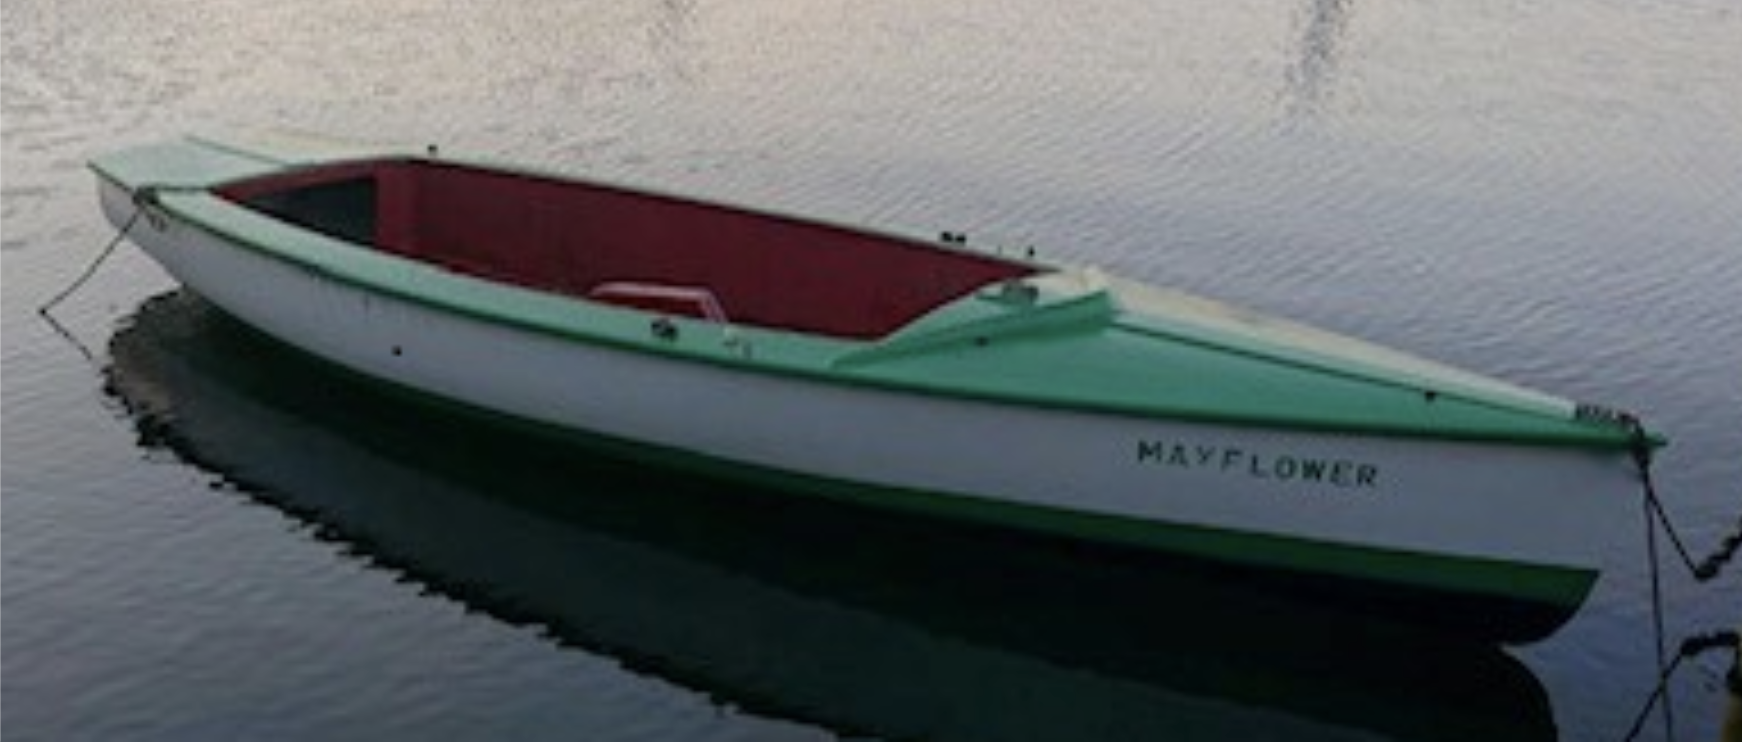 Abgeschlossenes Projekt: Die Mayflower in der Klimawerkstatt – viel zu schade für den Bootsfriedhof!